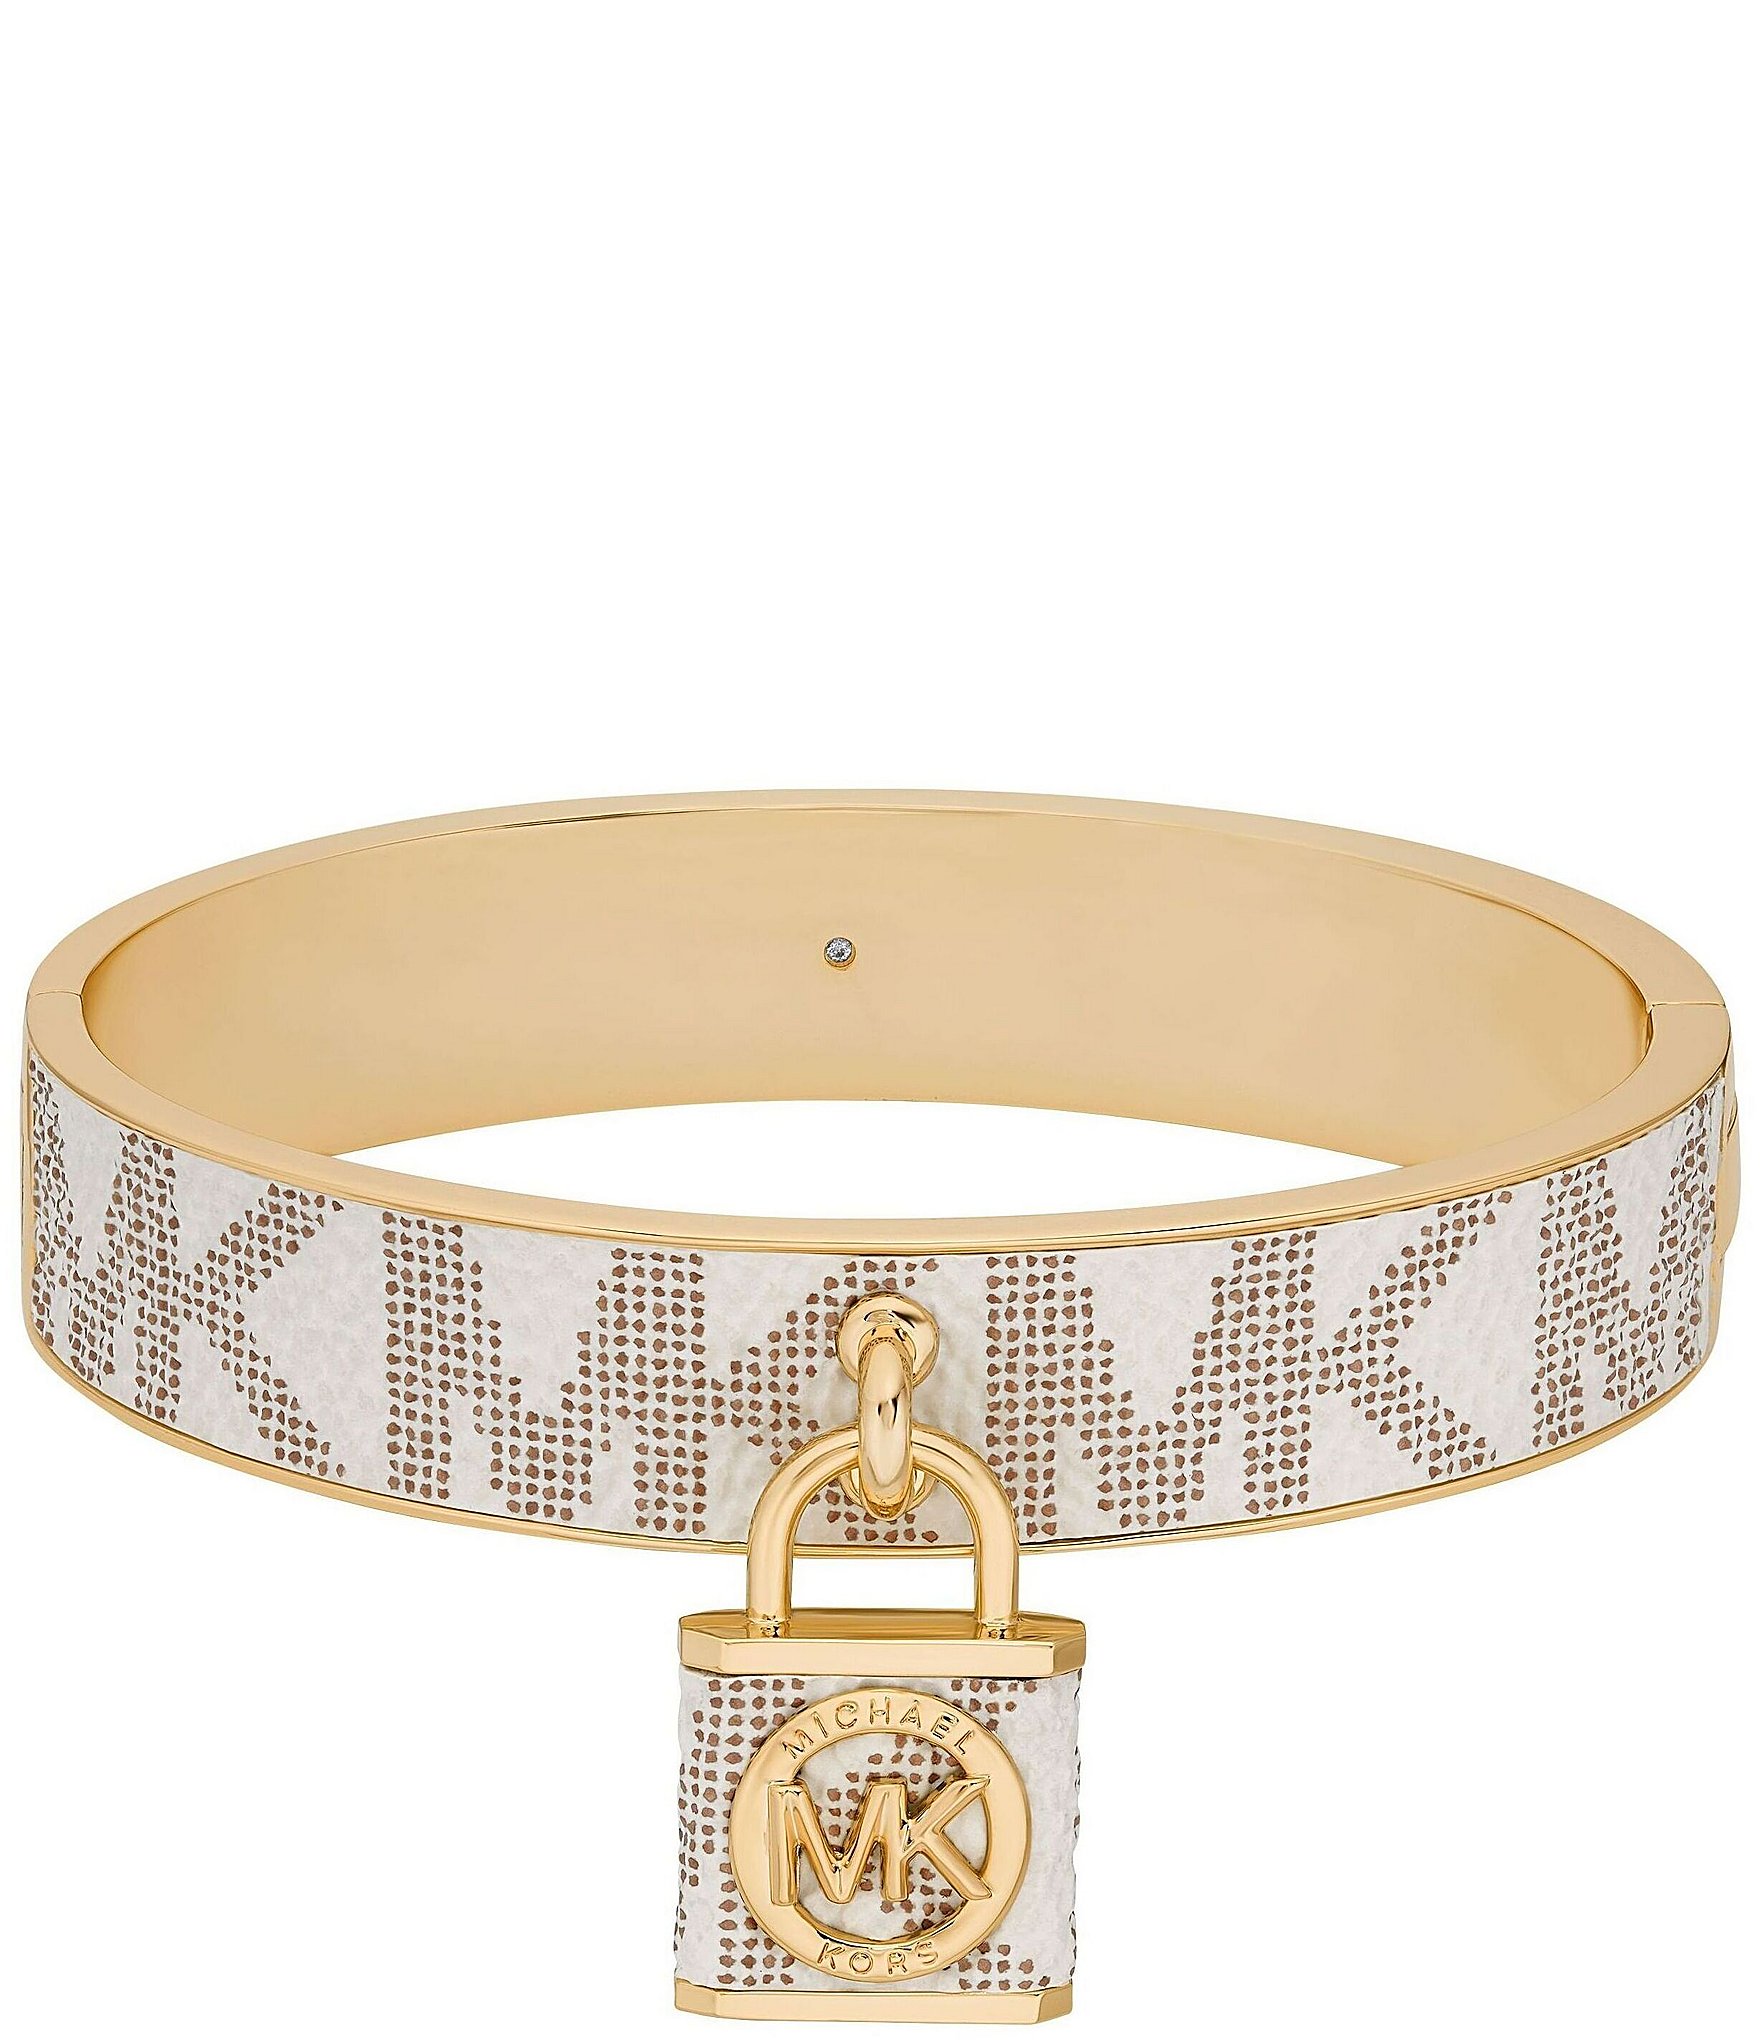 Michael Kors | Jewelry | Michael Kors Padlock Bracelet | Poshmark